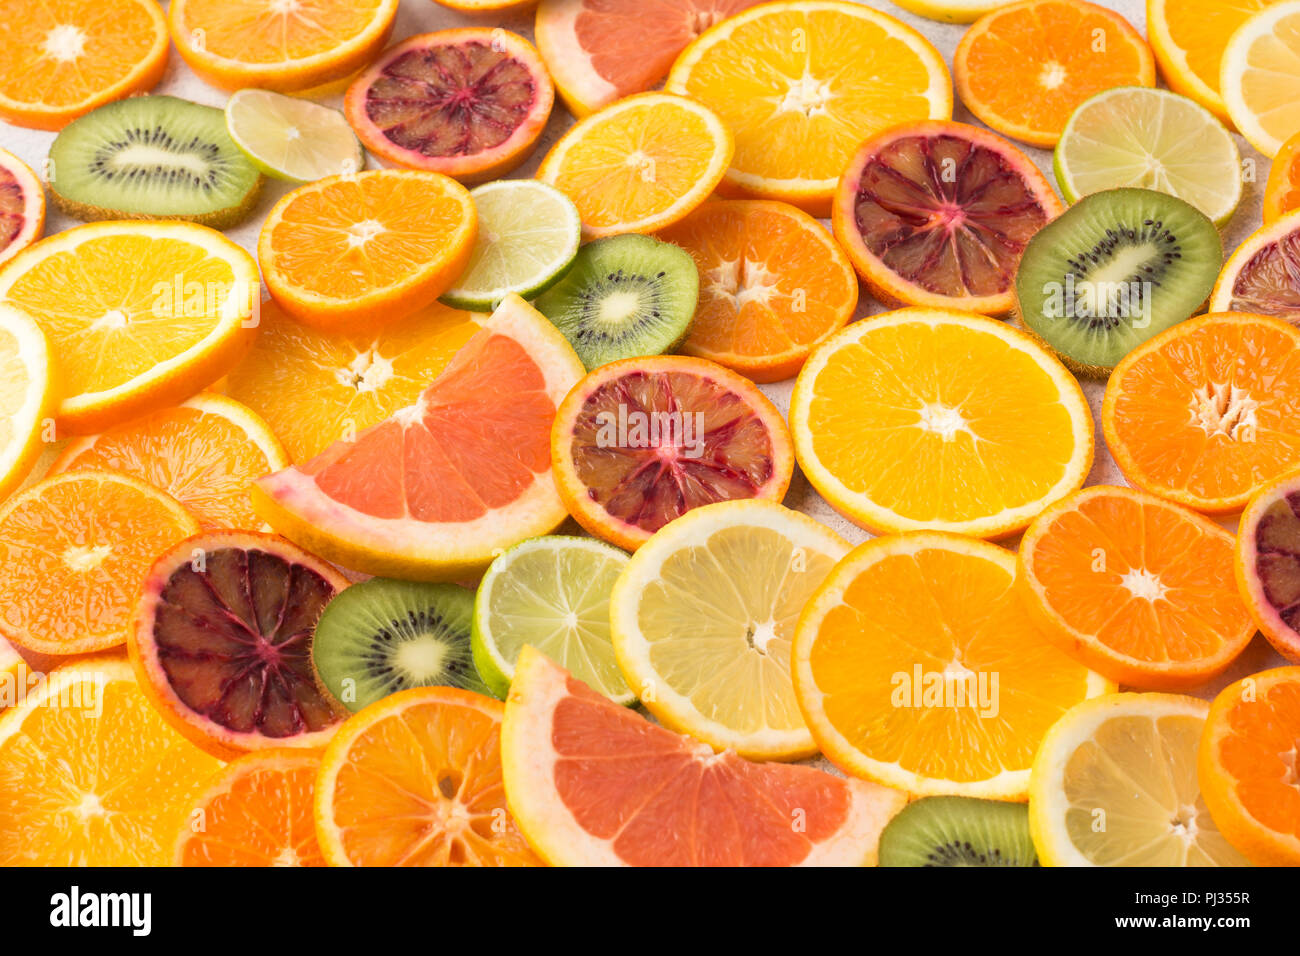 Arrière-plan de fruits colorés oranges, clémentines, oranges sanguines, kiwis et pamplemousses sur tableau blanc, selective focus Banque D'Images